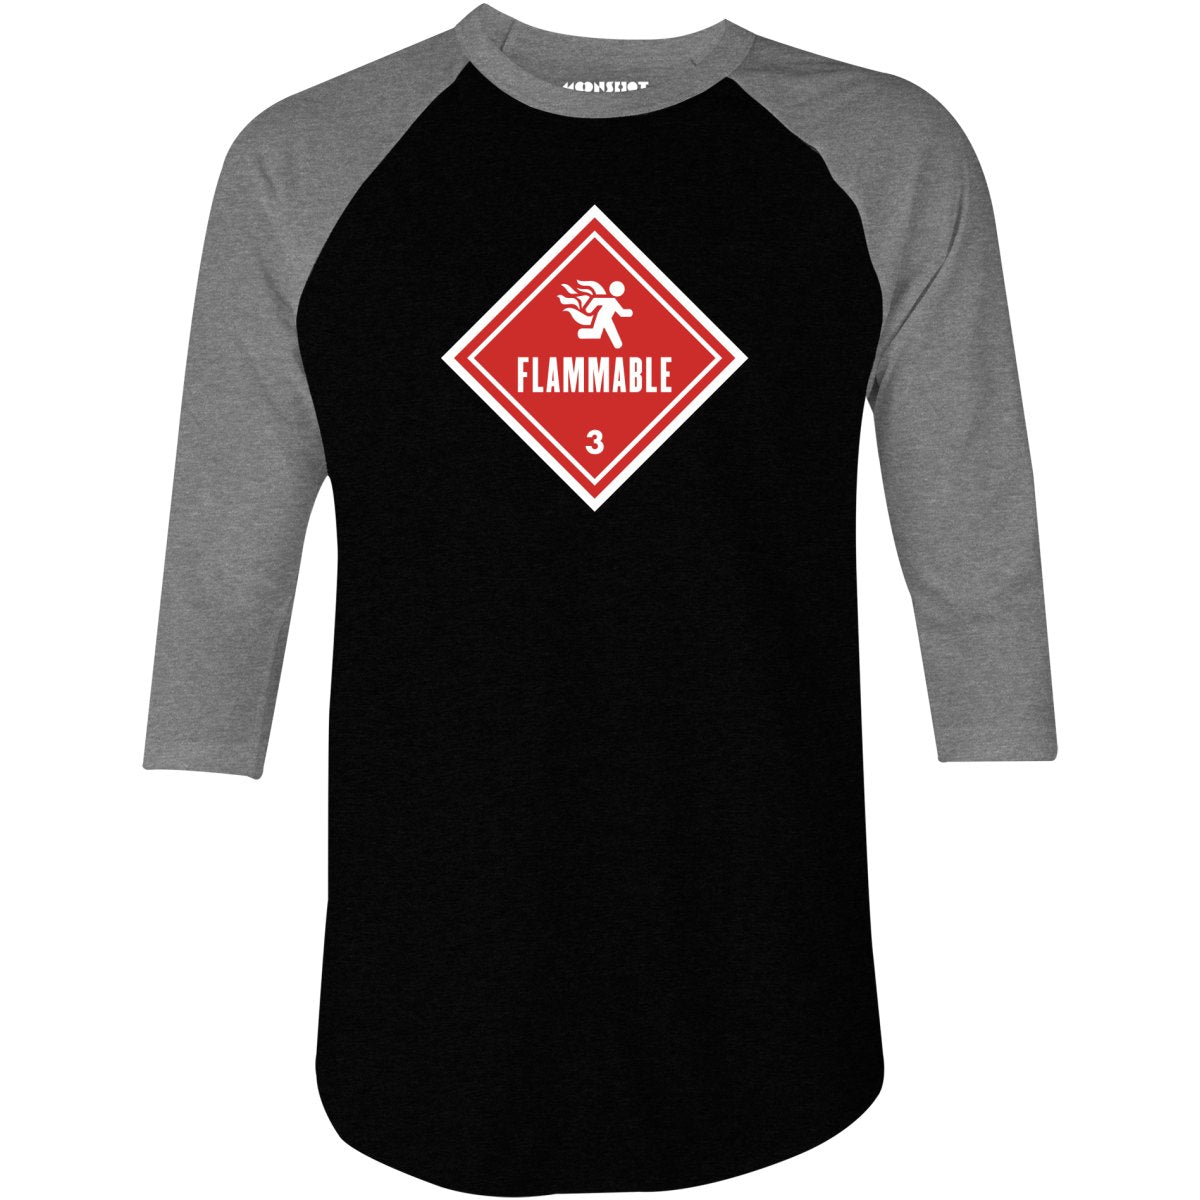 Flammable Human Warning - 3/4 Sleeve Raglan T-Shirt